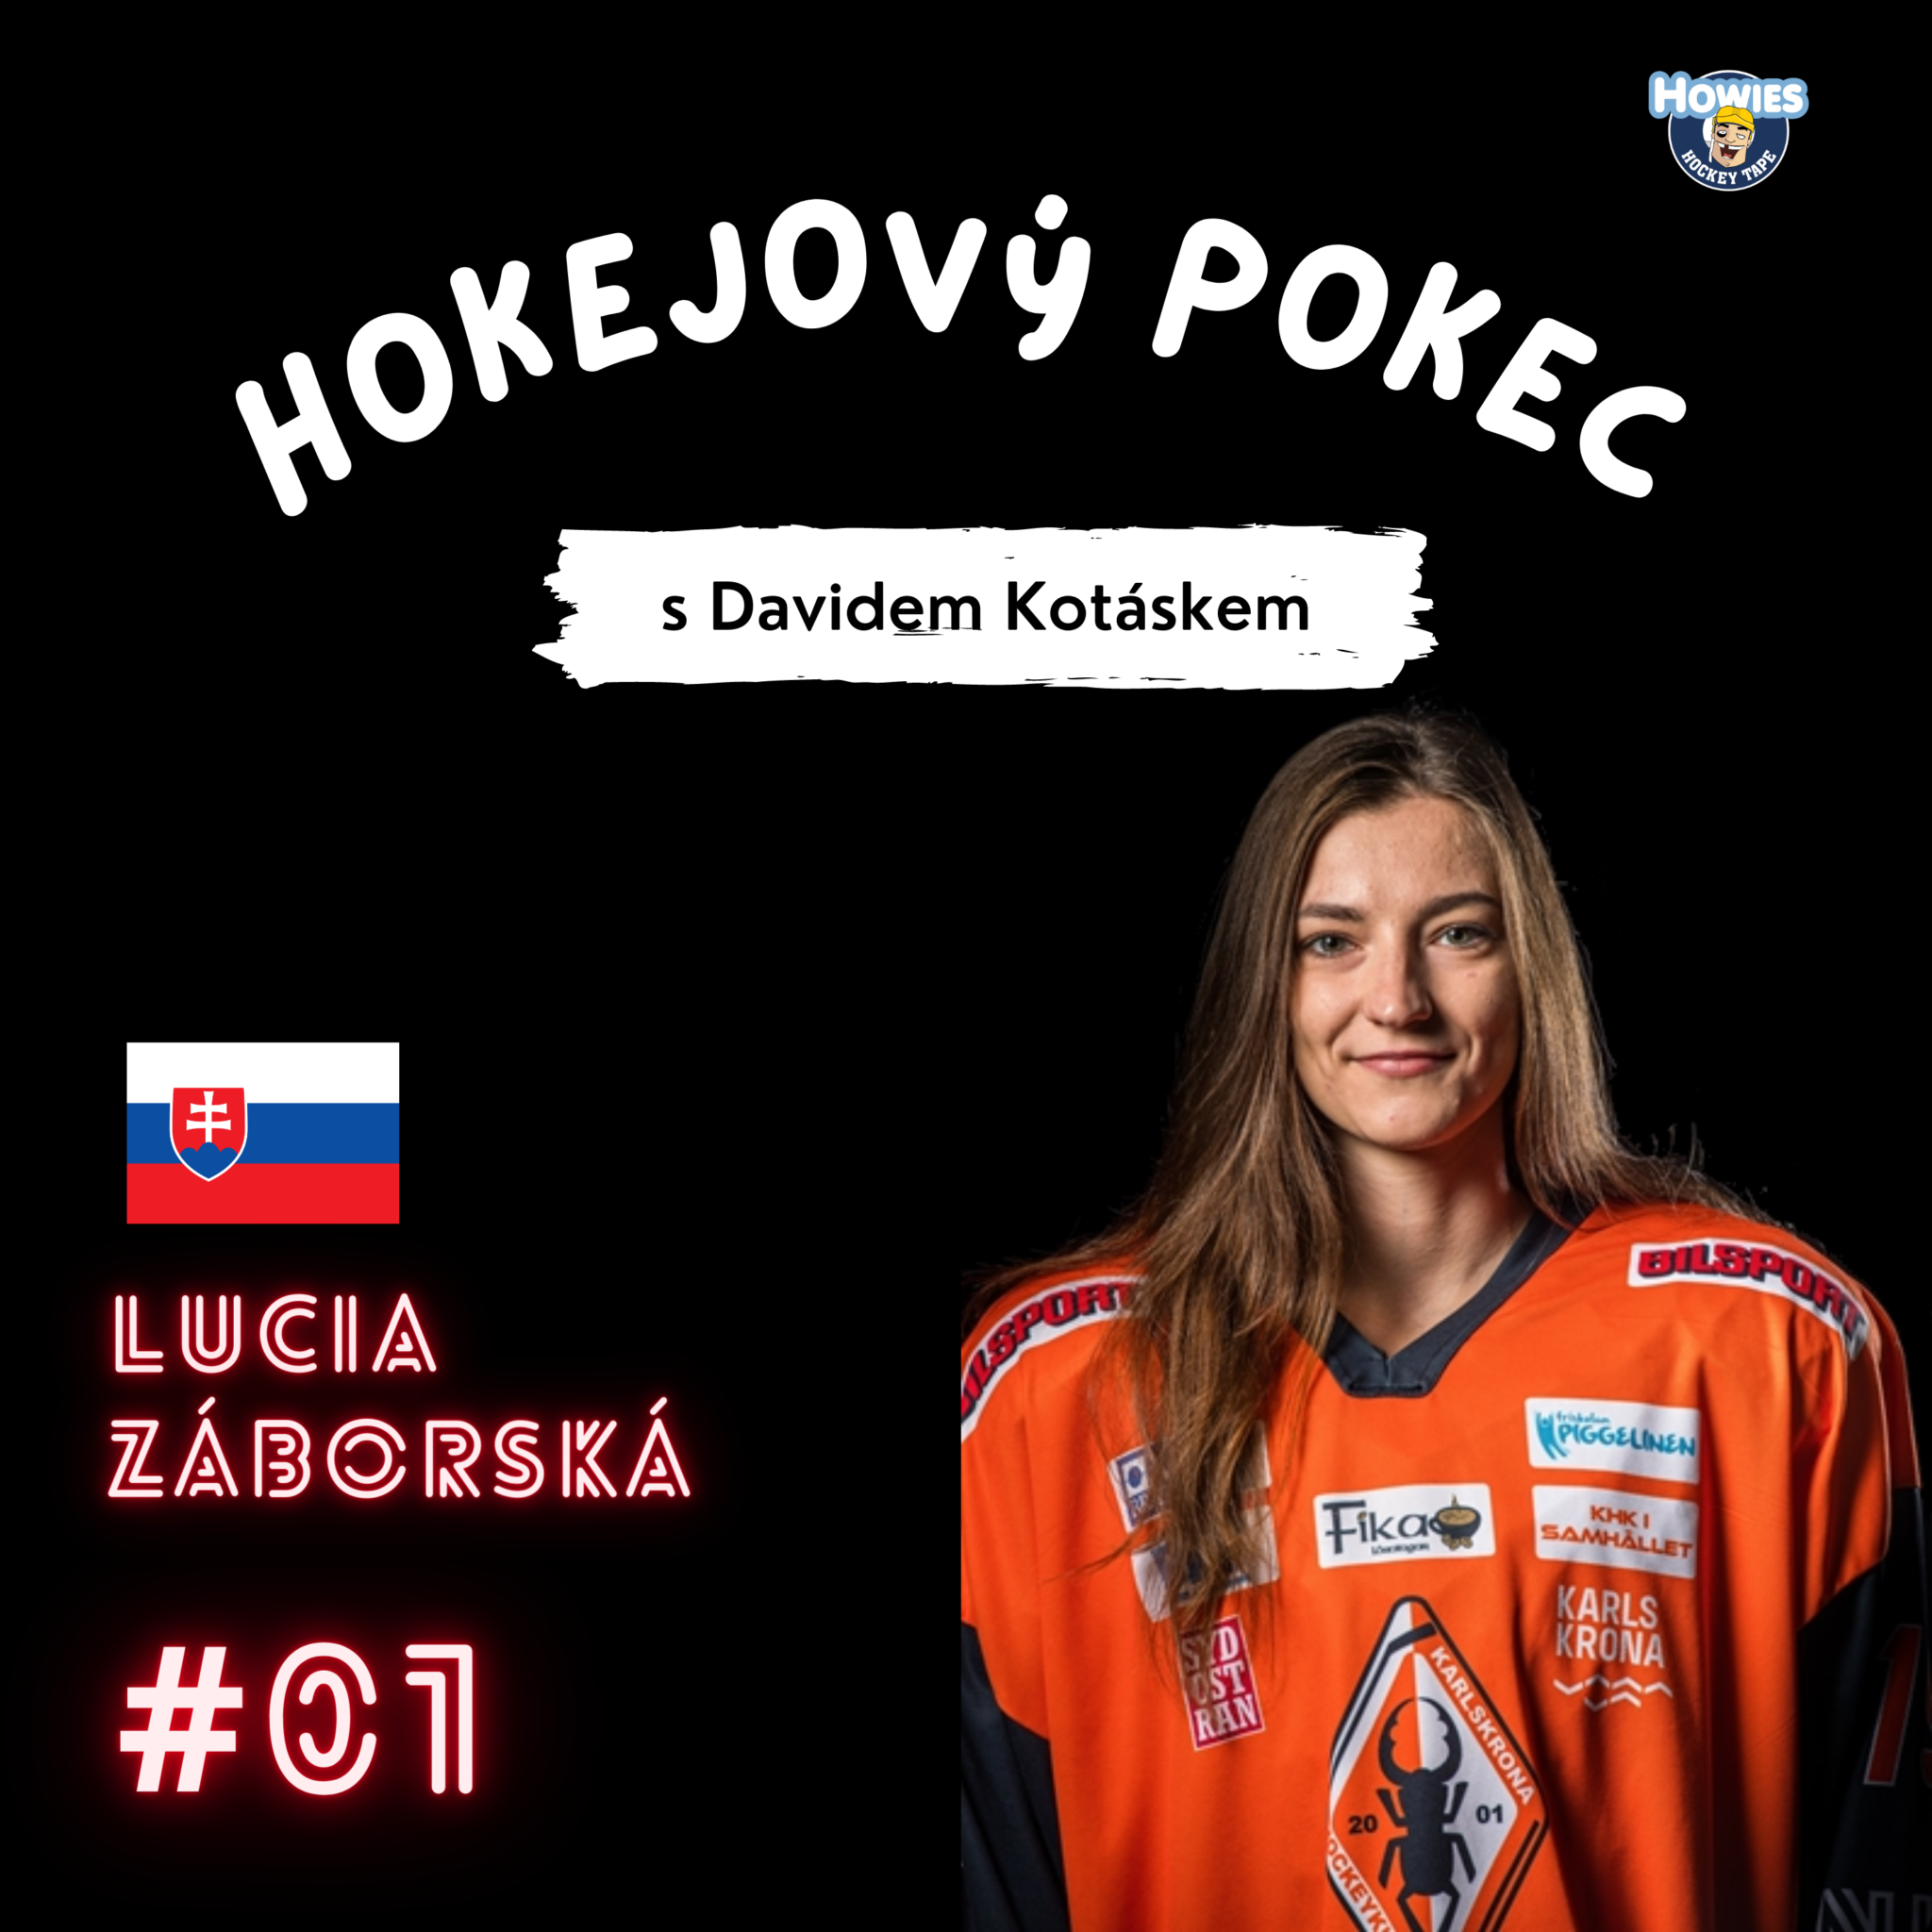 Lucia Záborská | Slovak representative